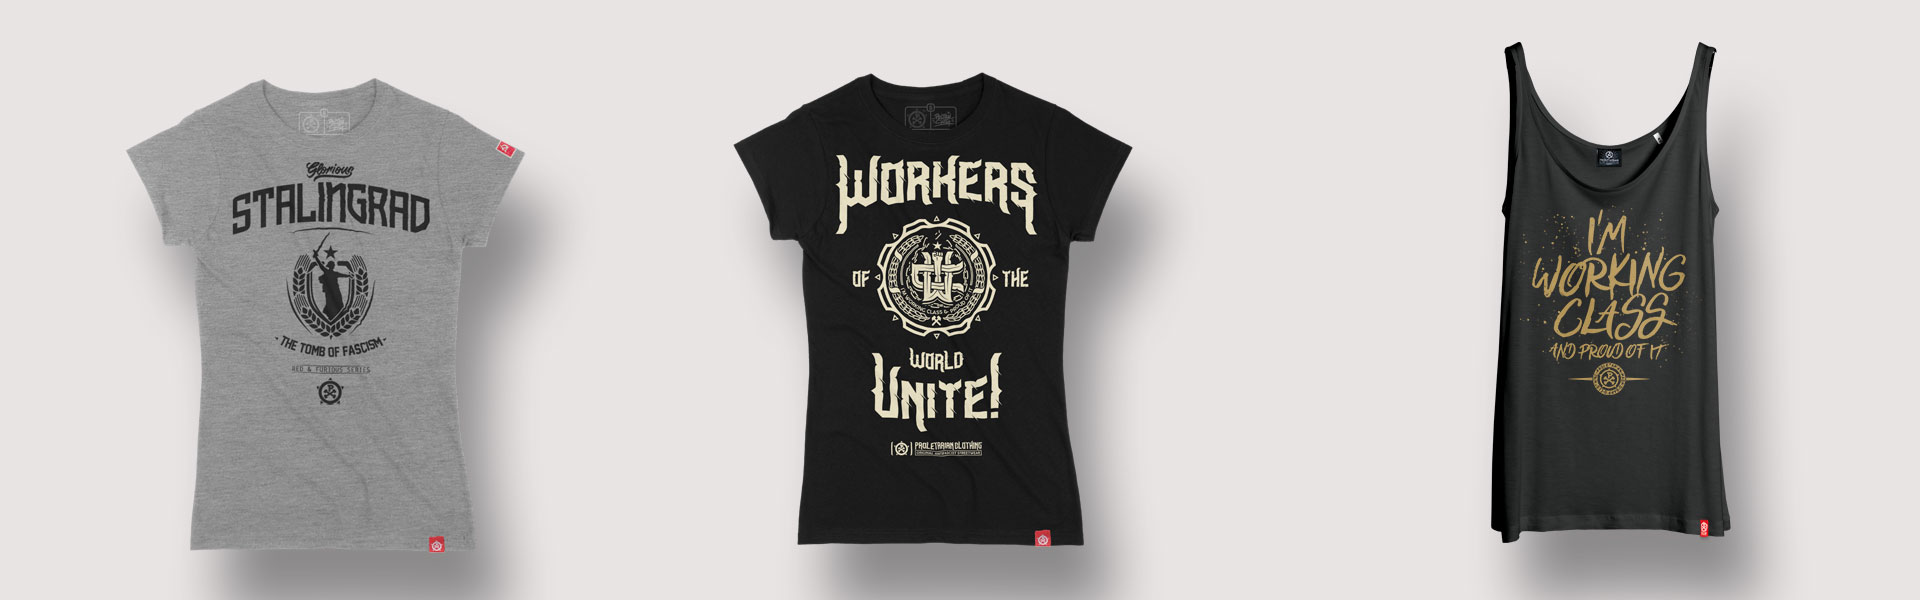 diseño-camisetas-identidad-grafica-proletarian-clothing-3